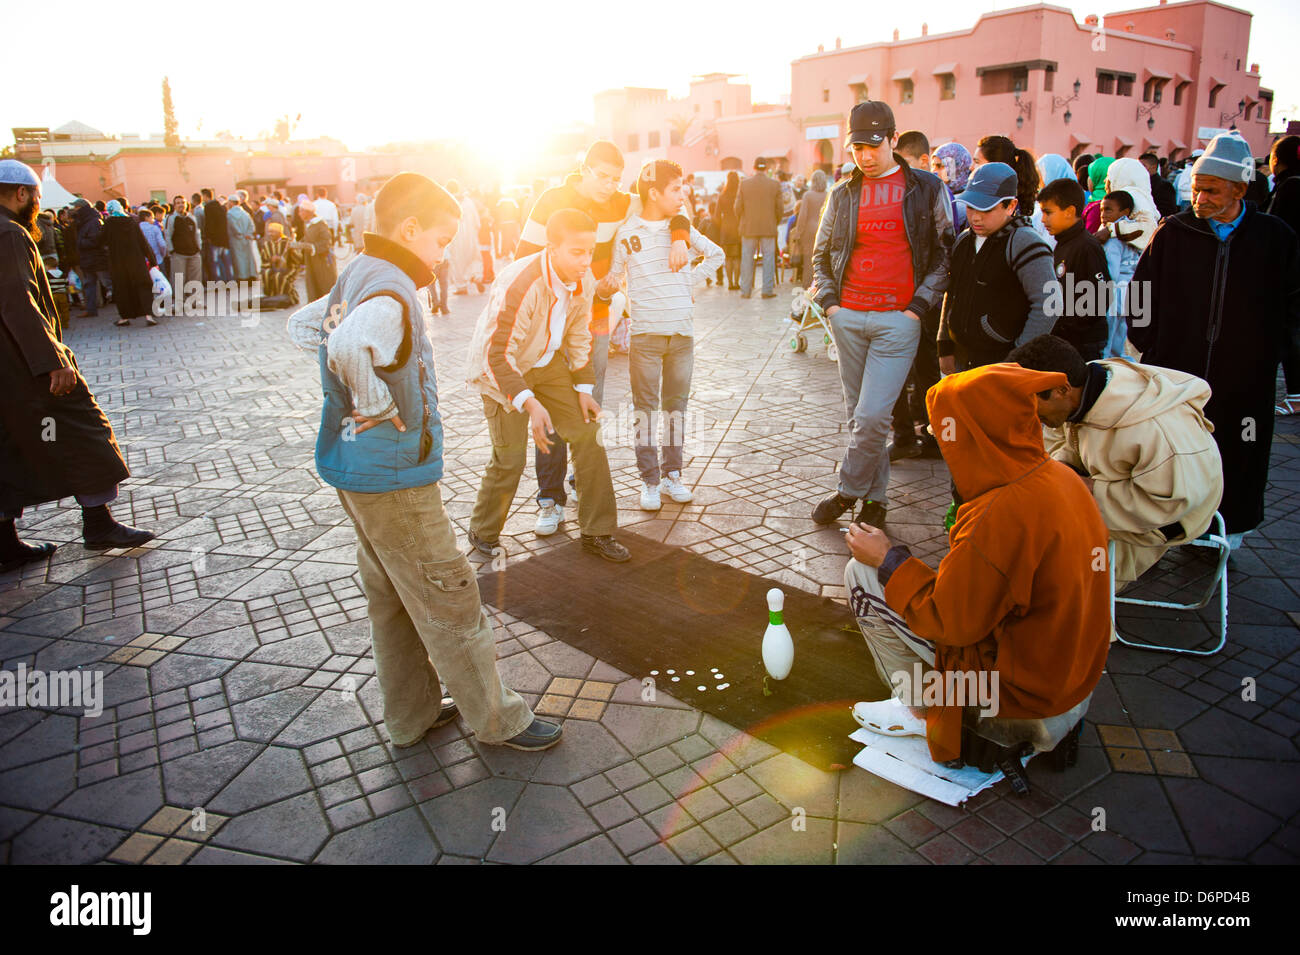 El pueblo marroquí jugando juegos de calle en la Place Djemaa El Fna, la famosa plaza de Marrakech, Marruecos, África del Norte, África Foto de stock